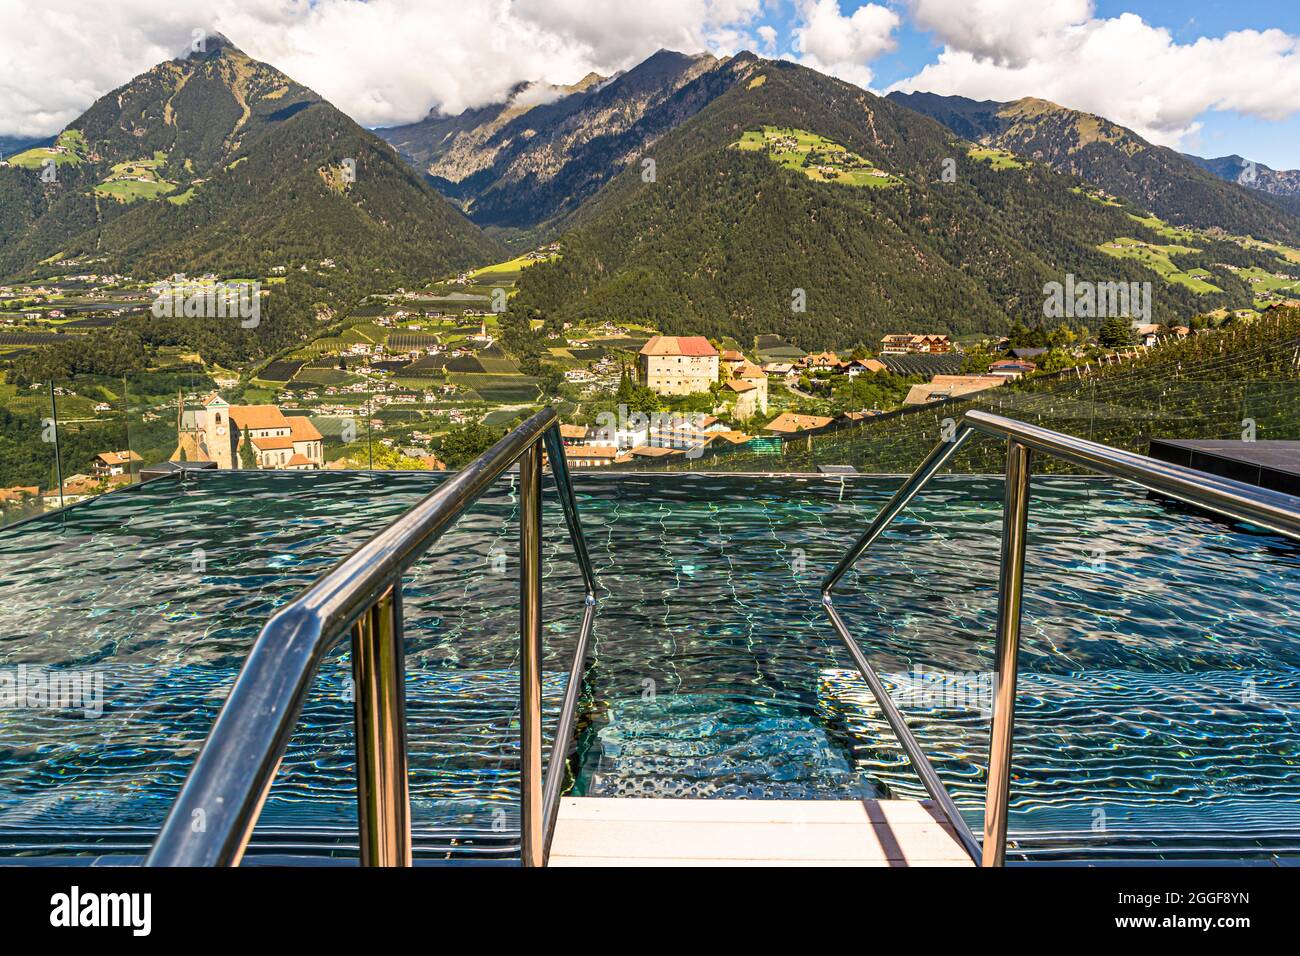 Piscine thermale dans l'espace bien-être sur le toit de l'hôtel Hohenwart avec une vue large sur le paysage autour de Schenna dans le Tyrol du Sud, Italie Banque D'Images